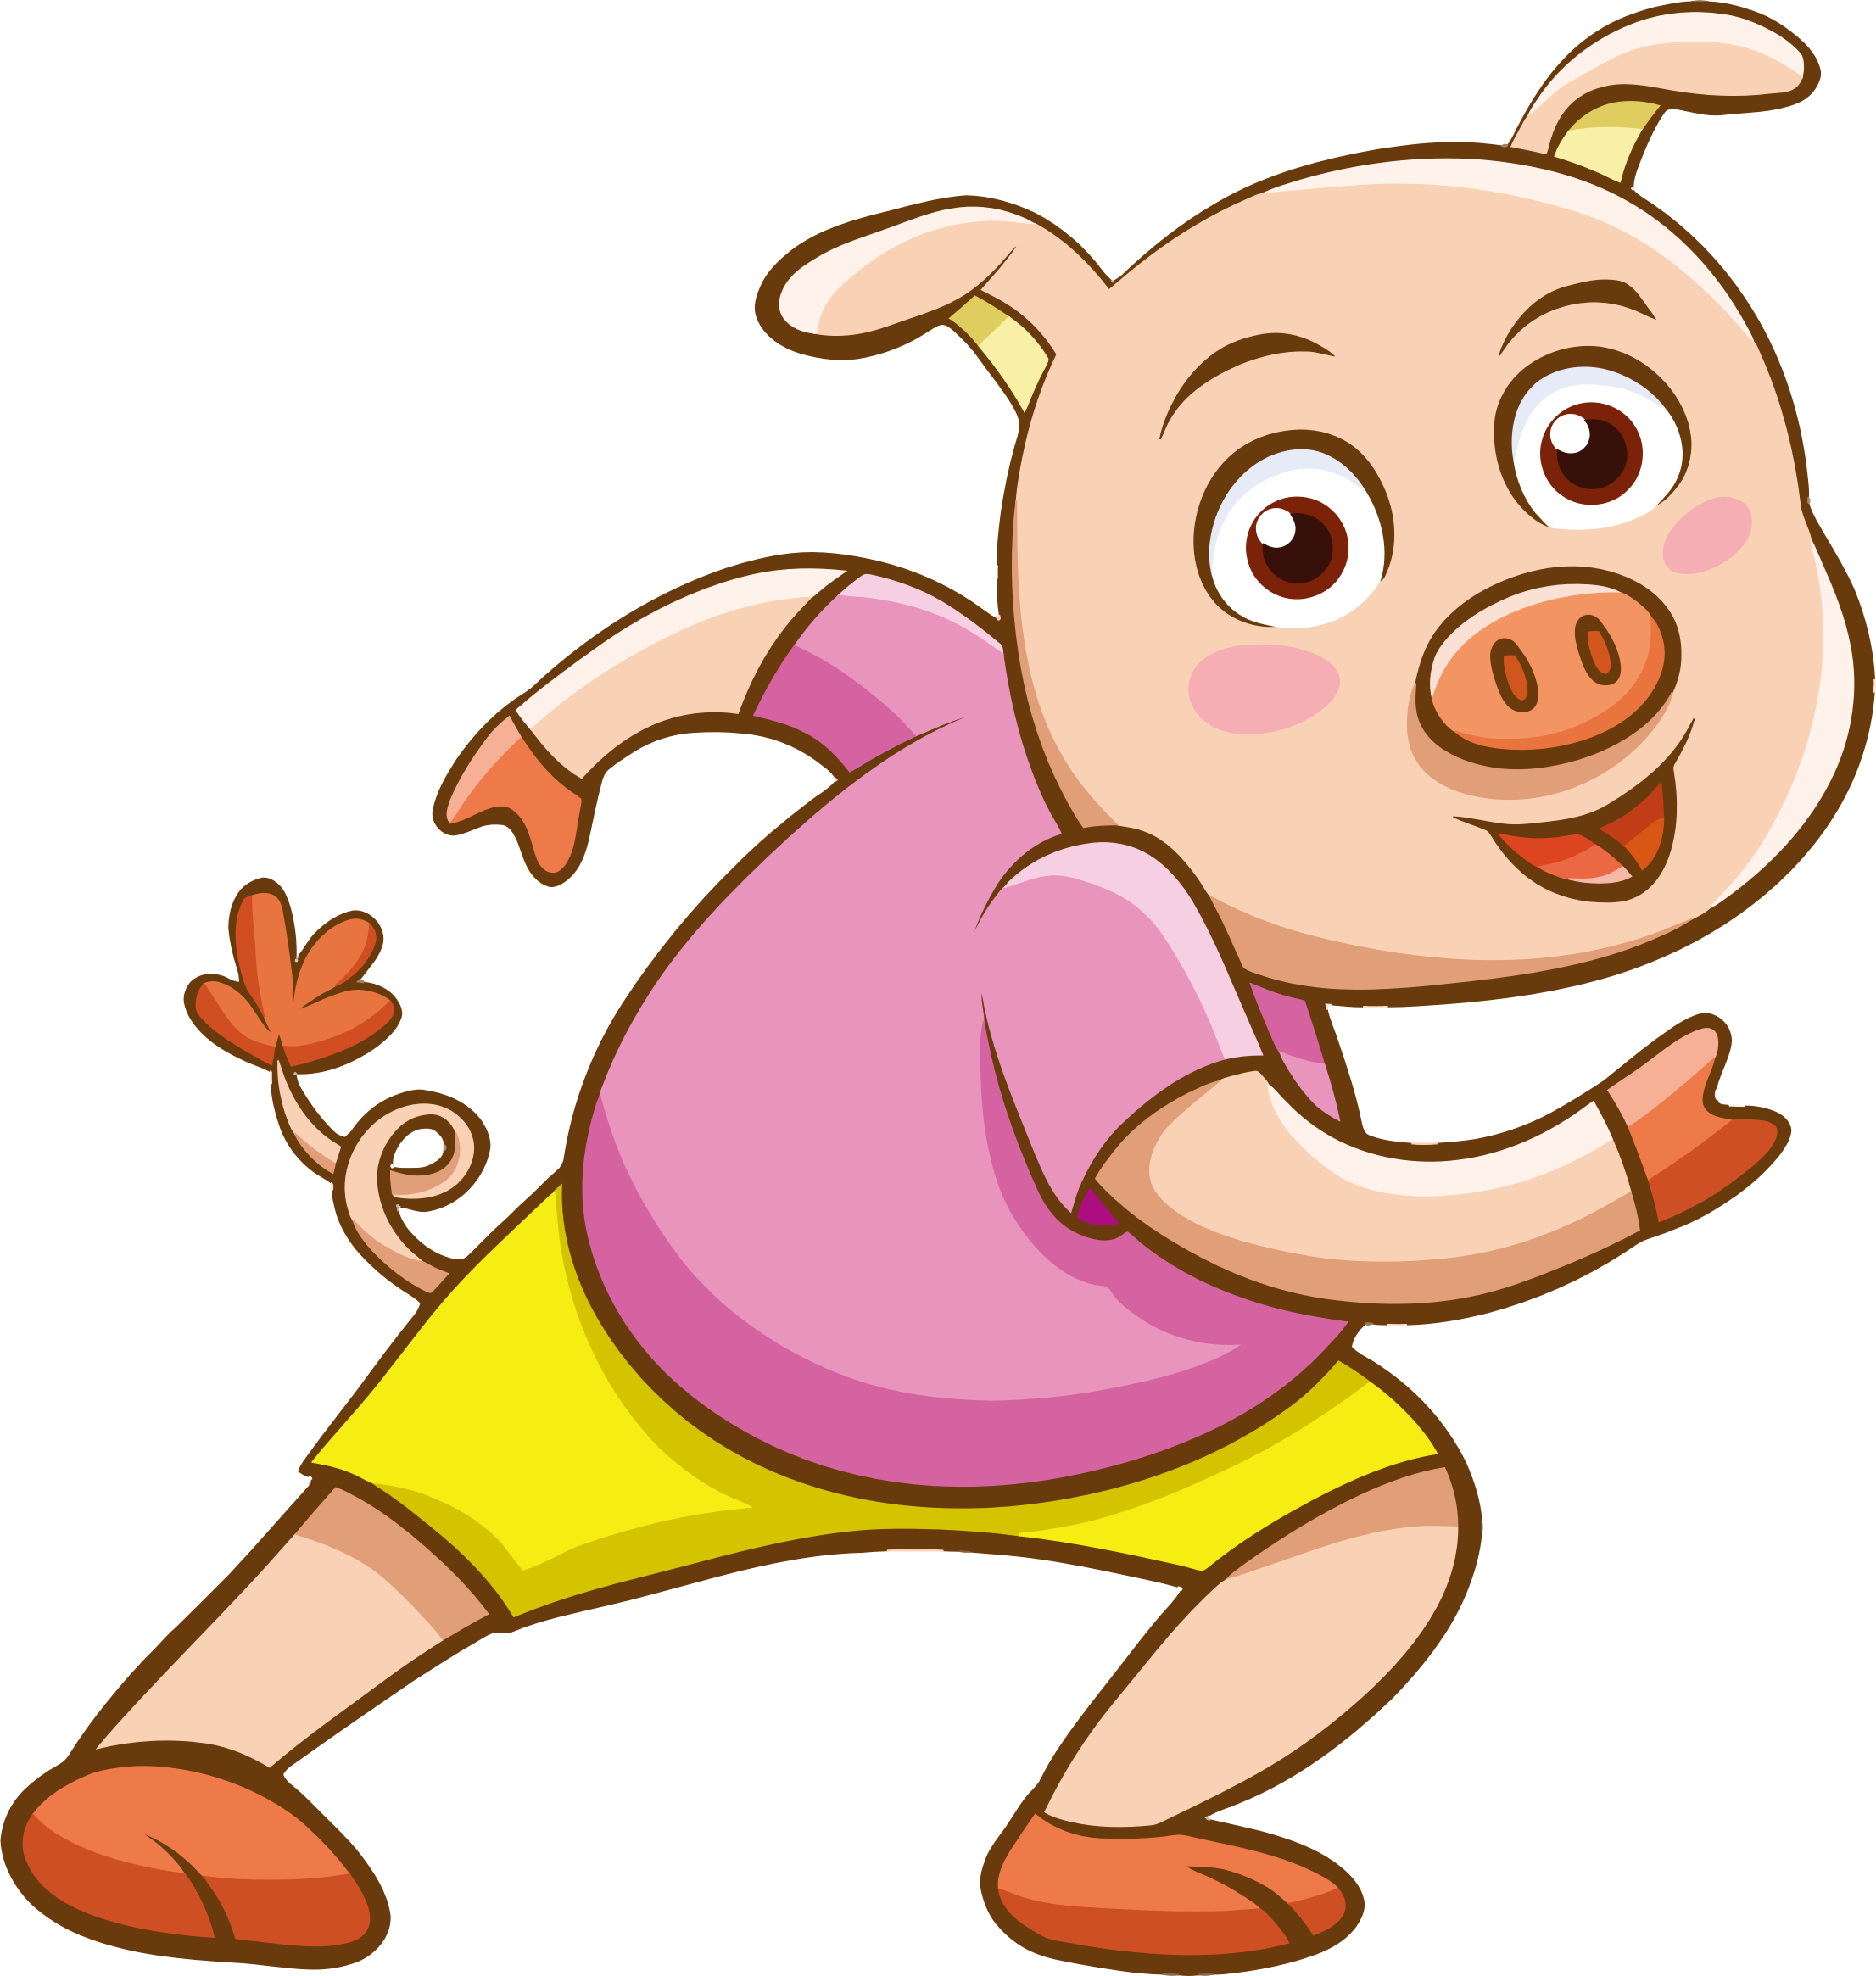 Piglet Domestic Pig Cartoon Clip Art - Piglet Domestic Pig Cartoon Clip Art (2212x2330)